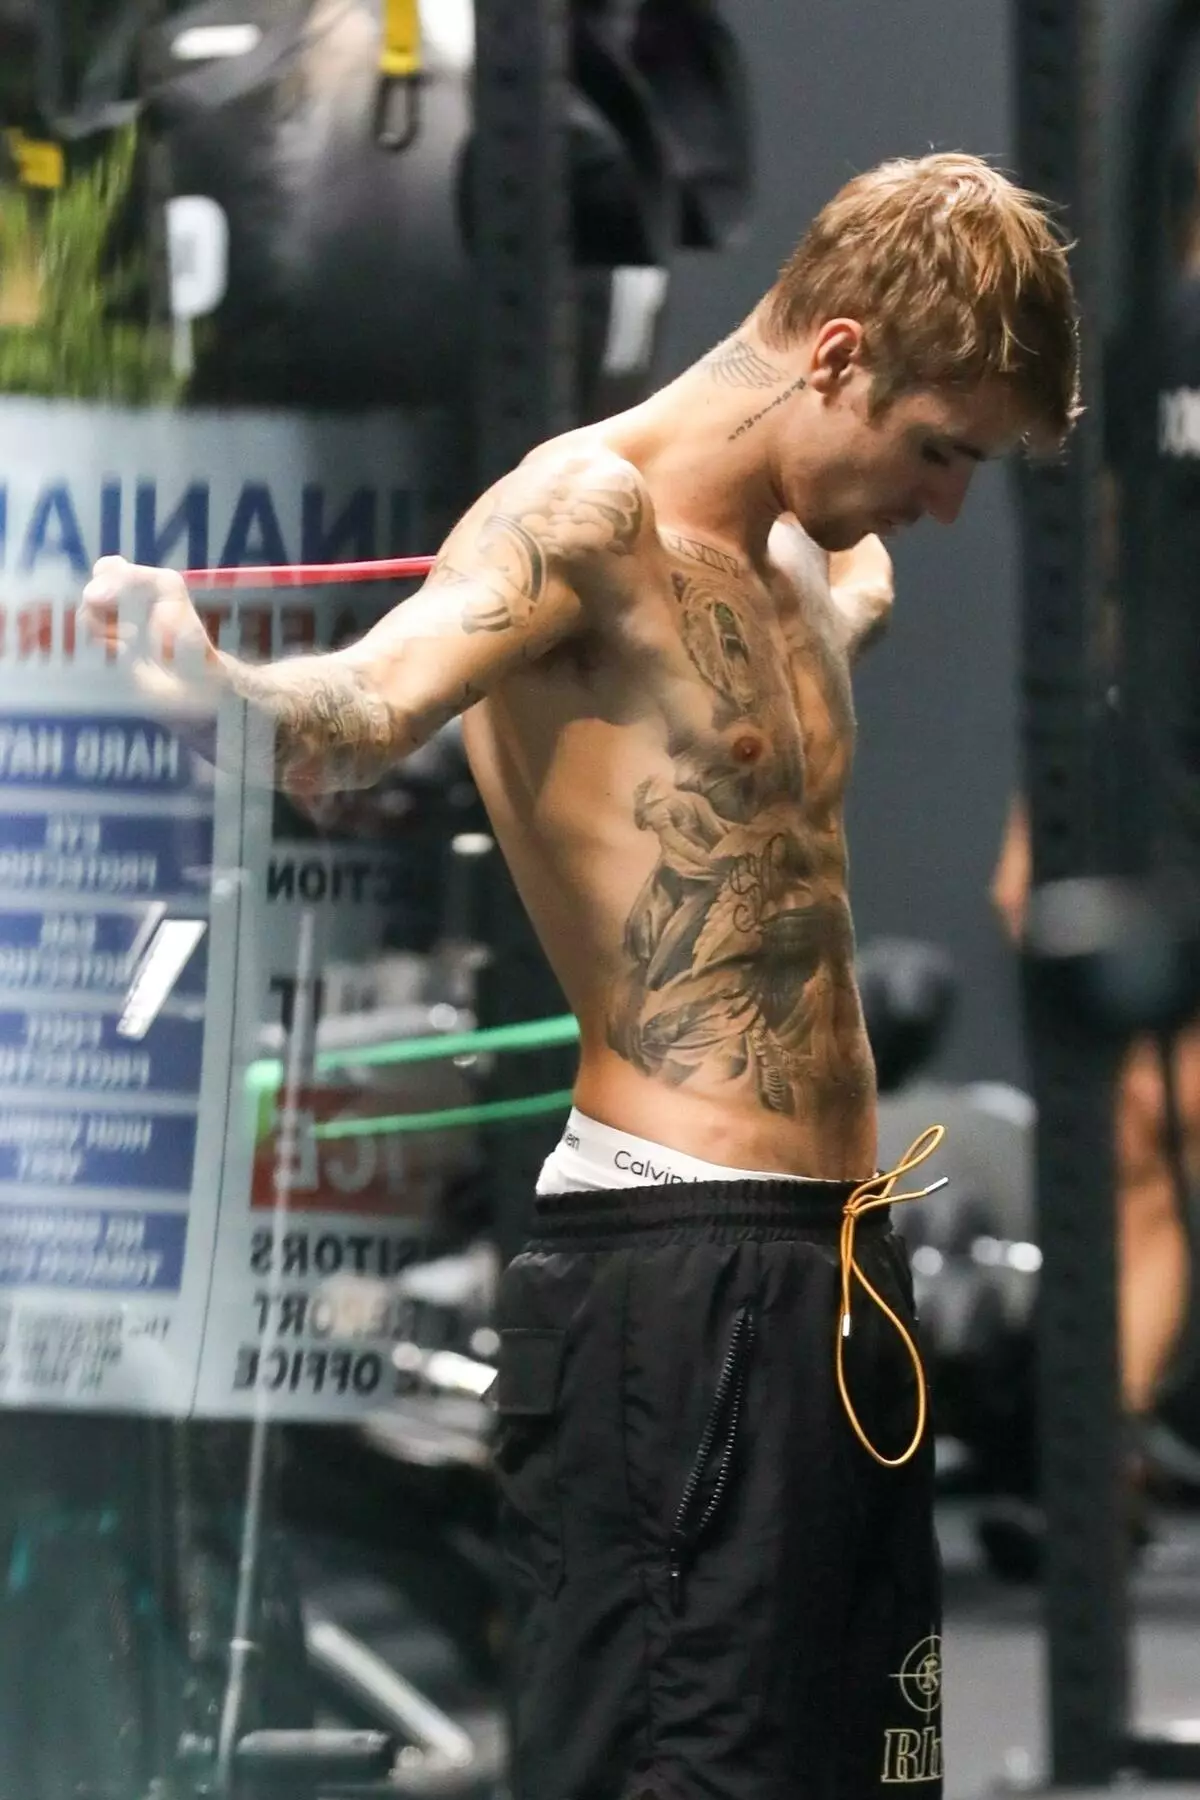 Tagata faigaluega togafitiga: Justin Bieber i le toleniga i Los Angeles 109195_3